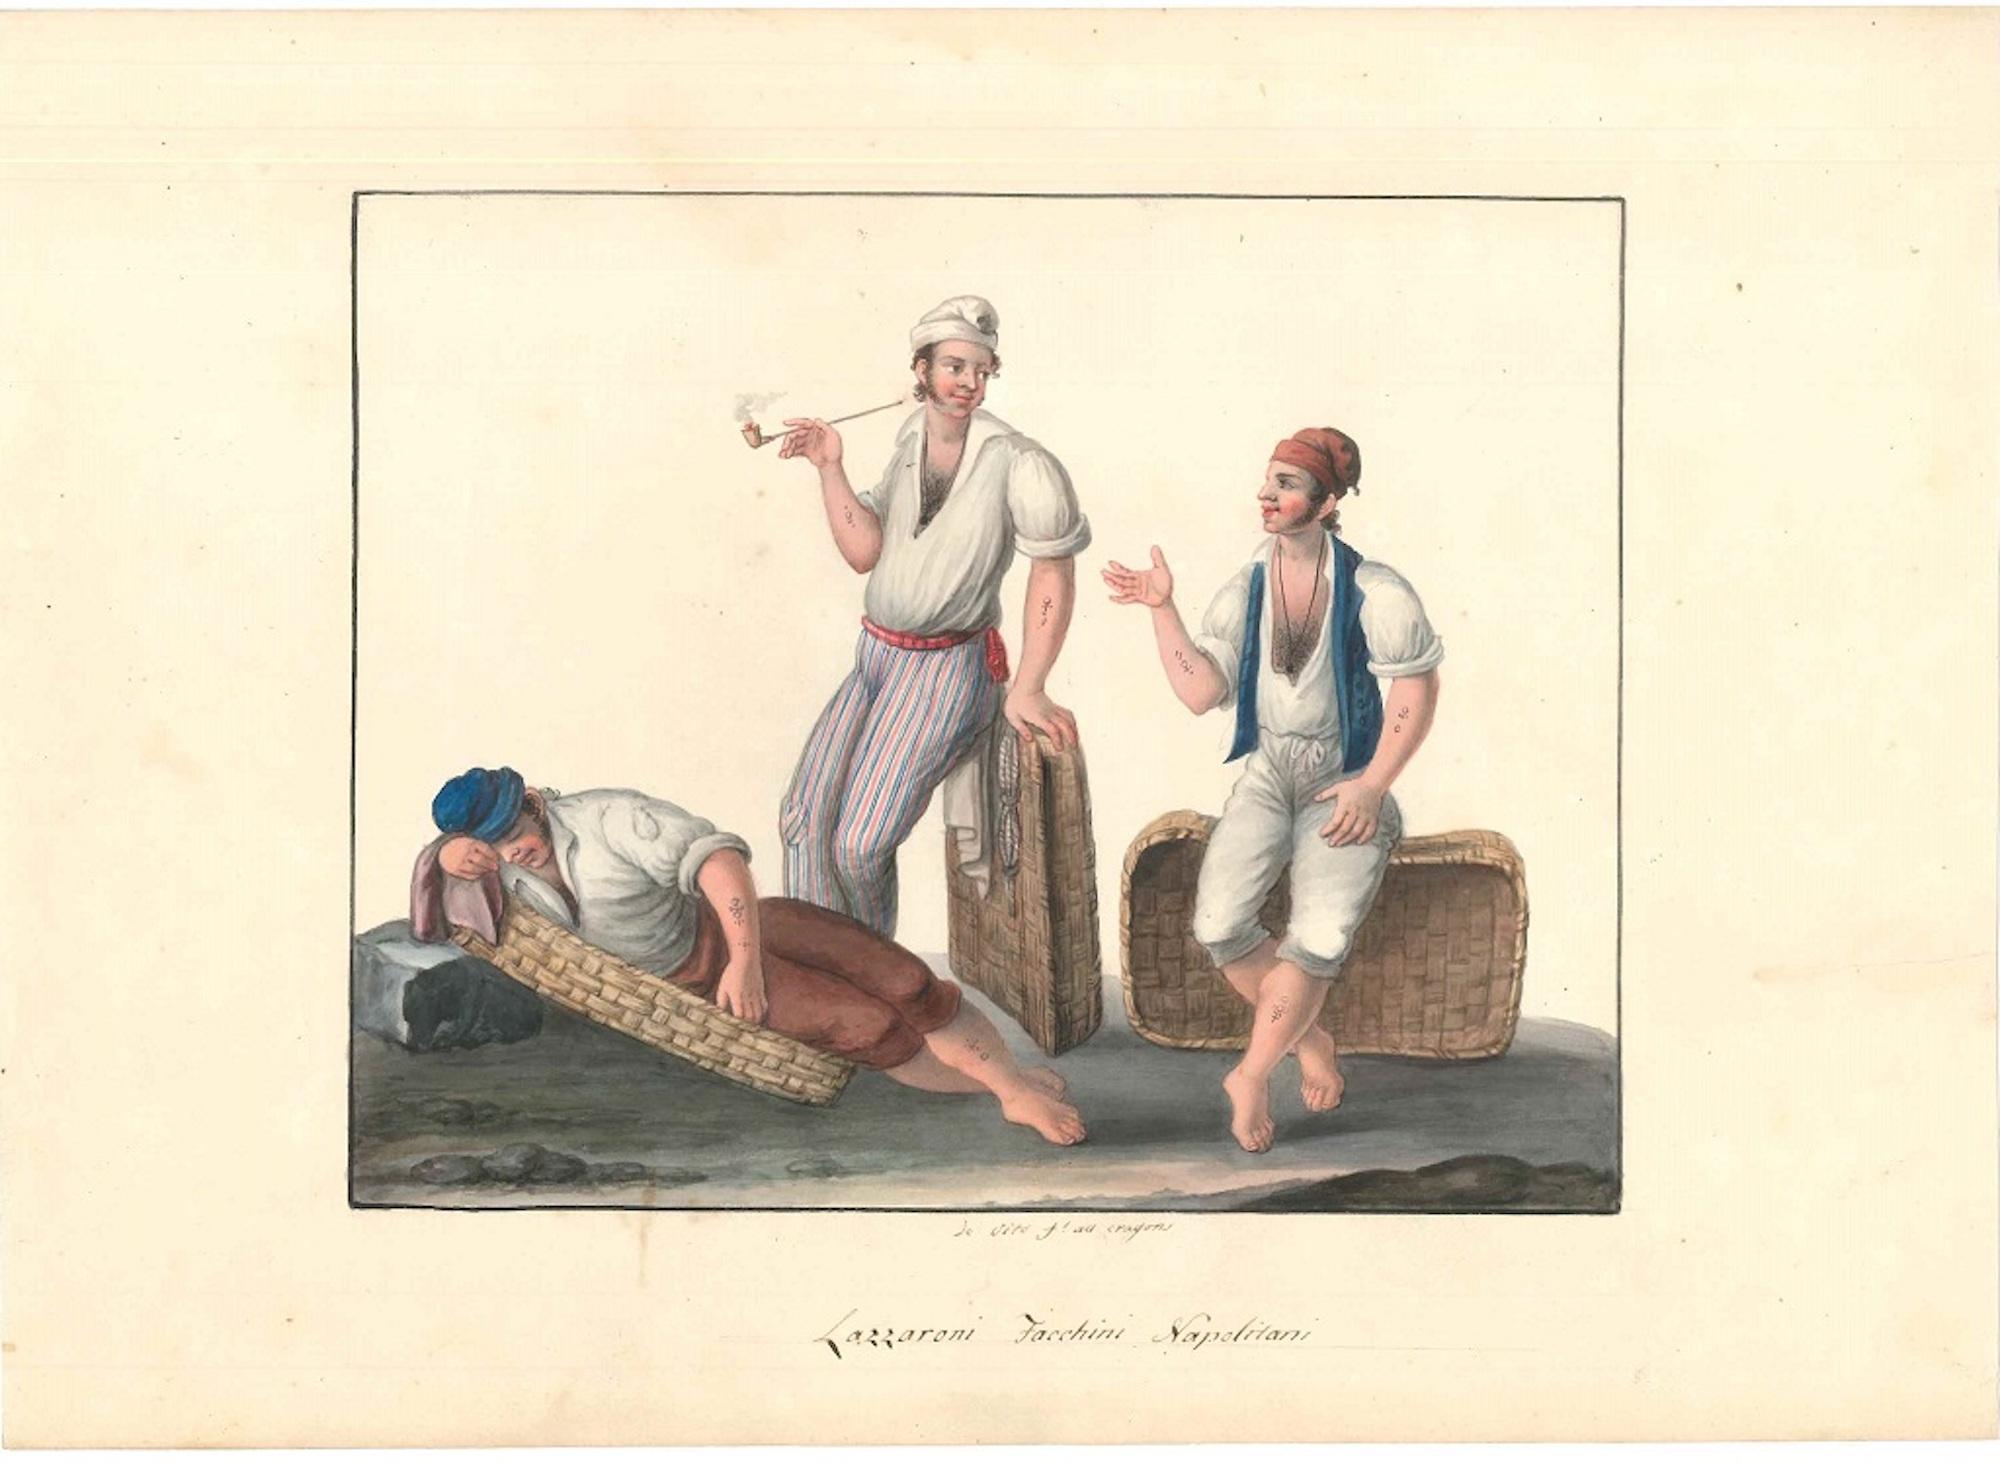 Lazzaroni Facchini Napolitani - Watercolor by M. De Vito - 1820 ca. - Art by Michela De Vito